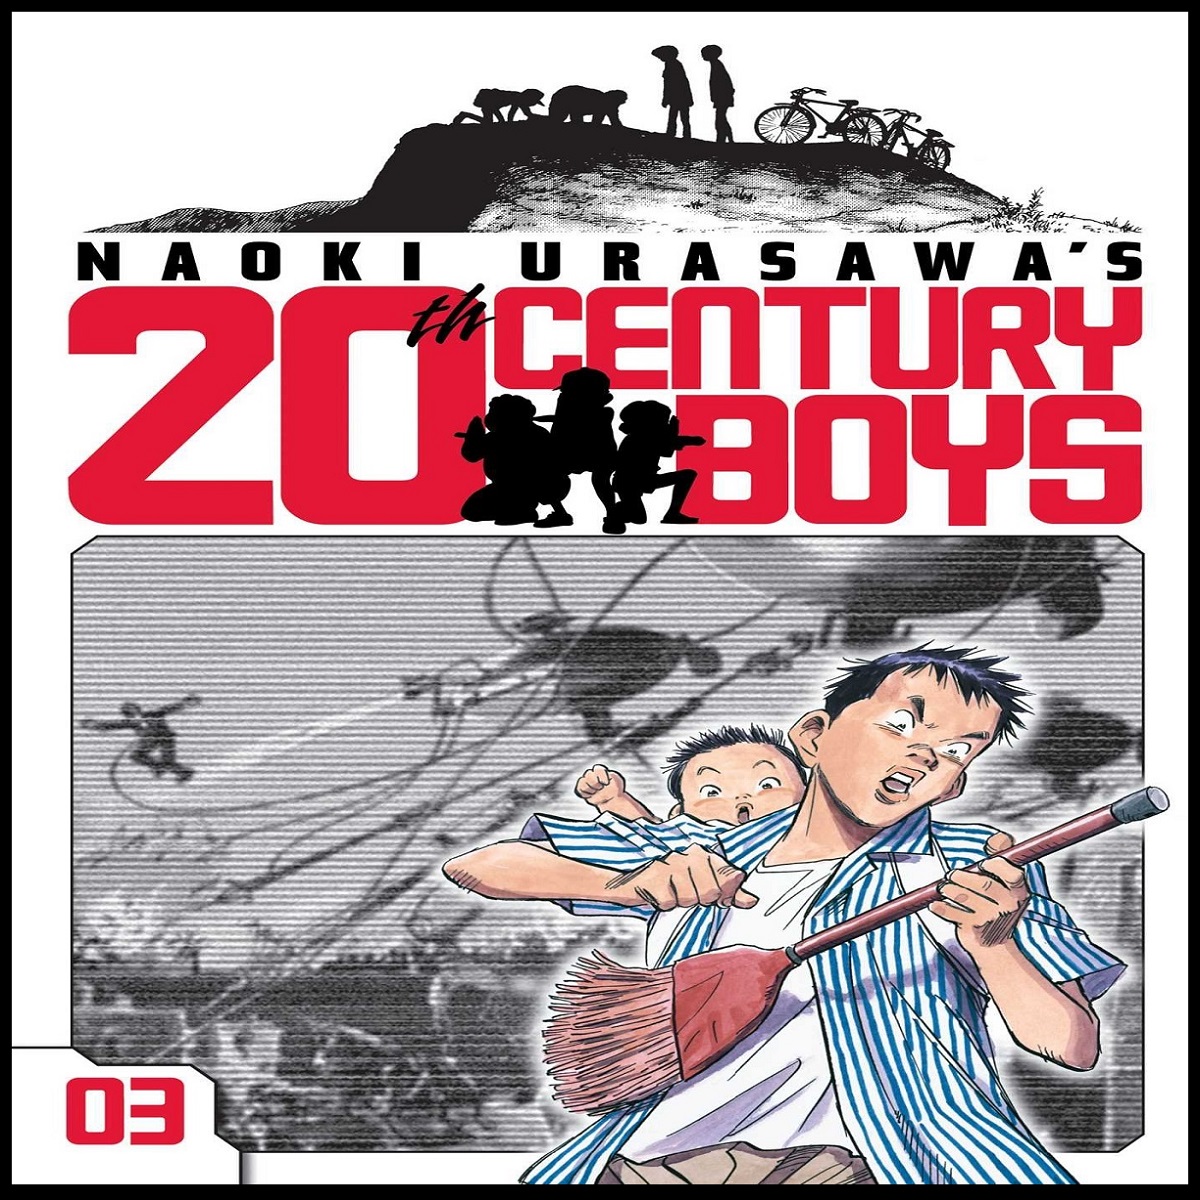 مجله Naoki Urasawa 20th Century Boys 3 ژوئن 2010